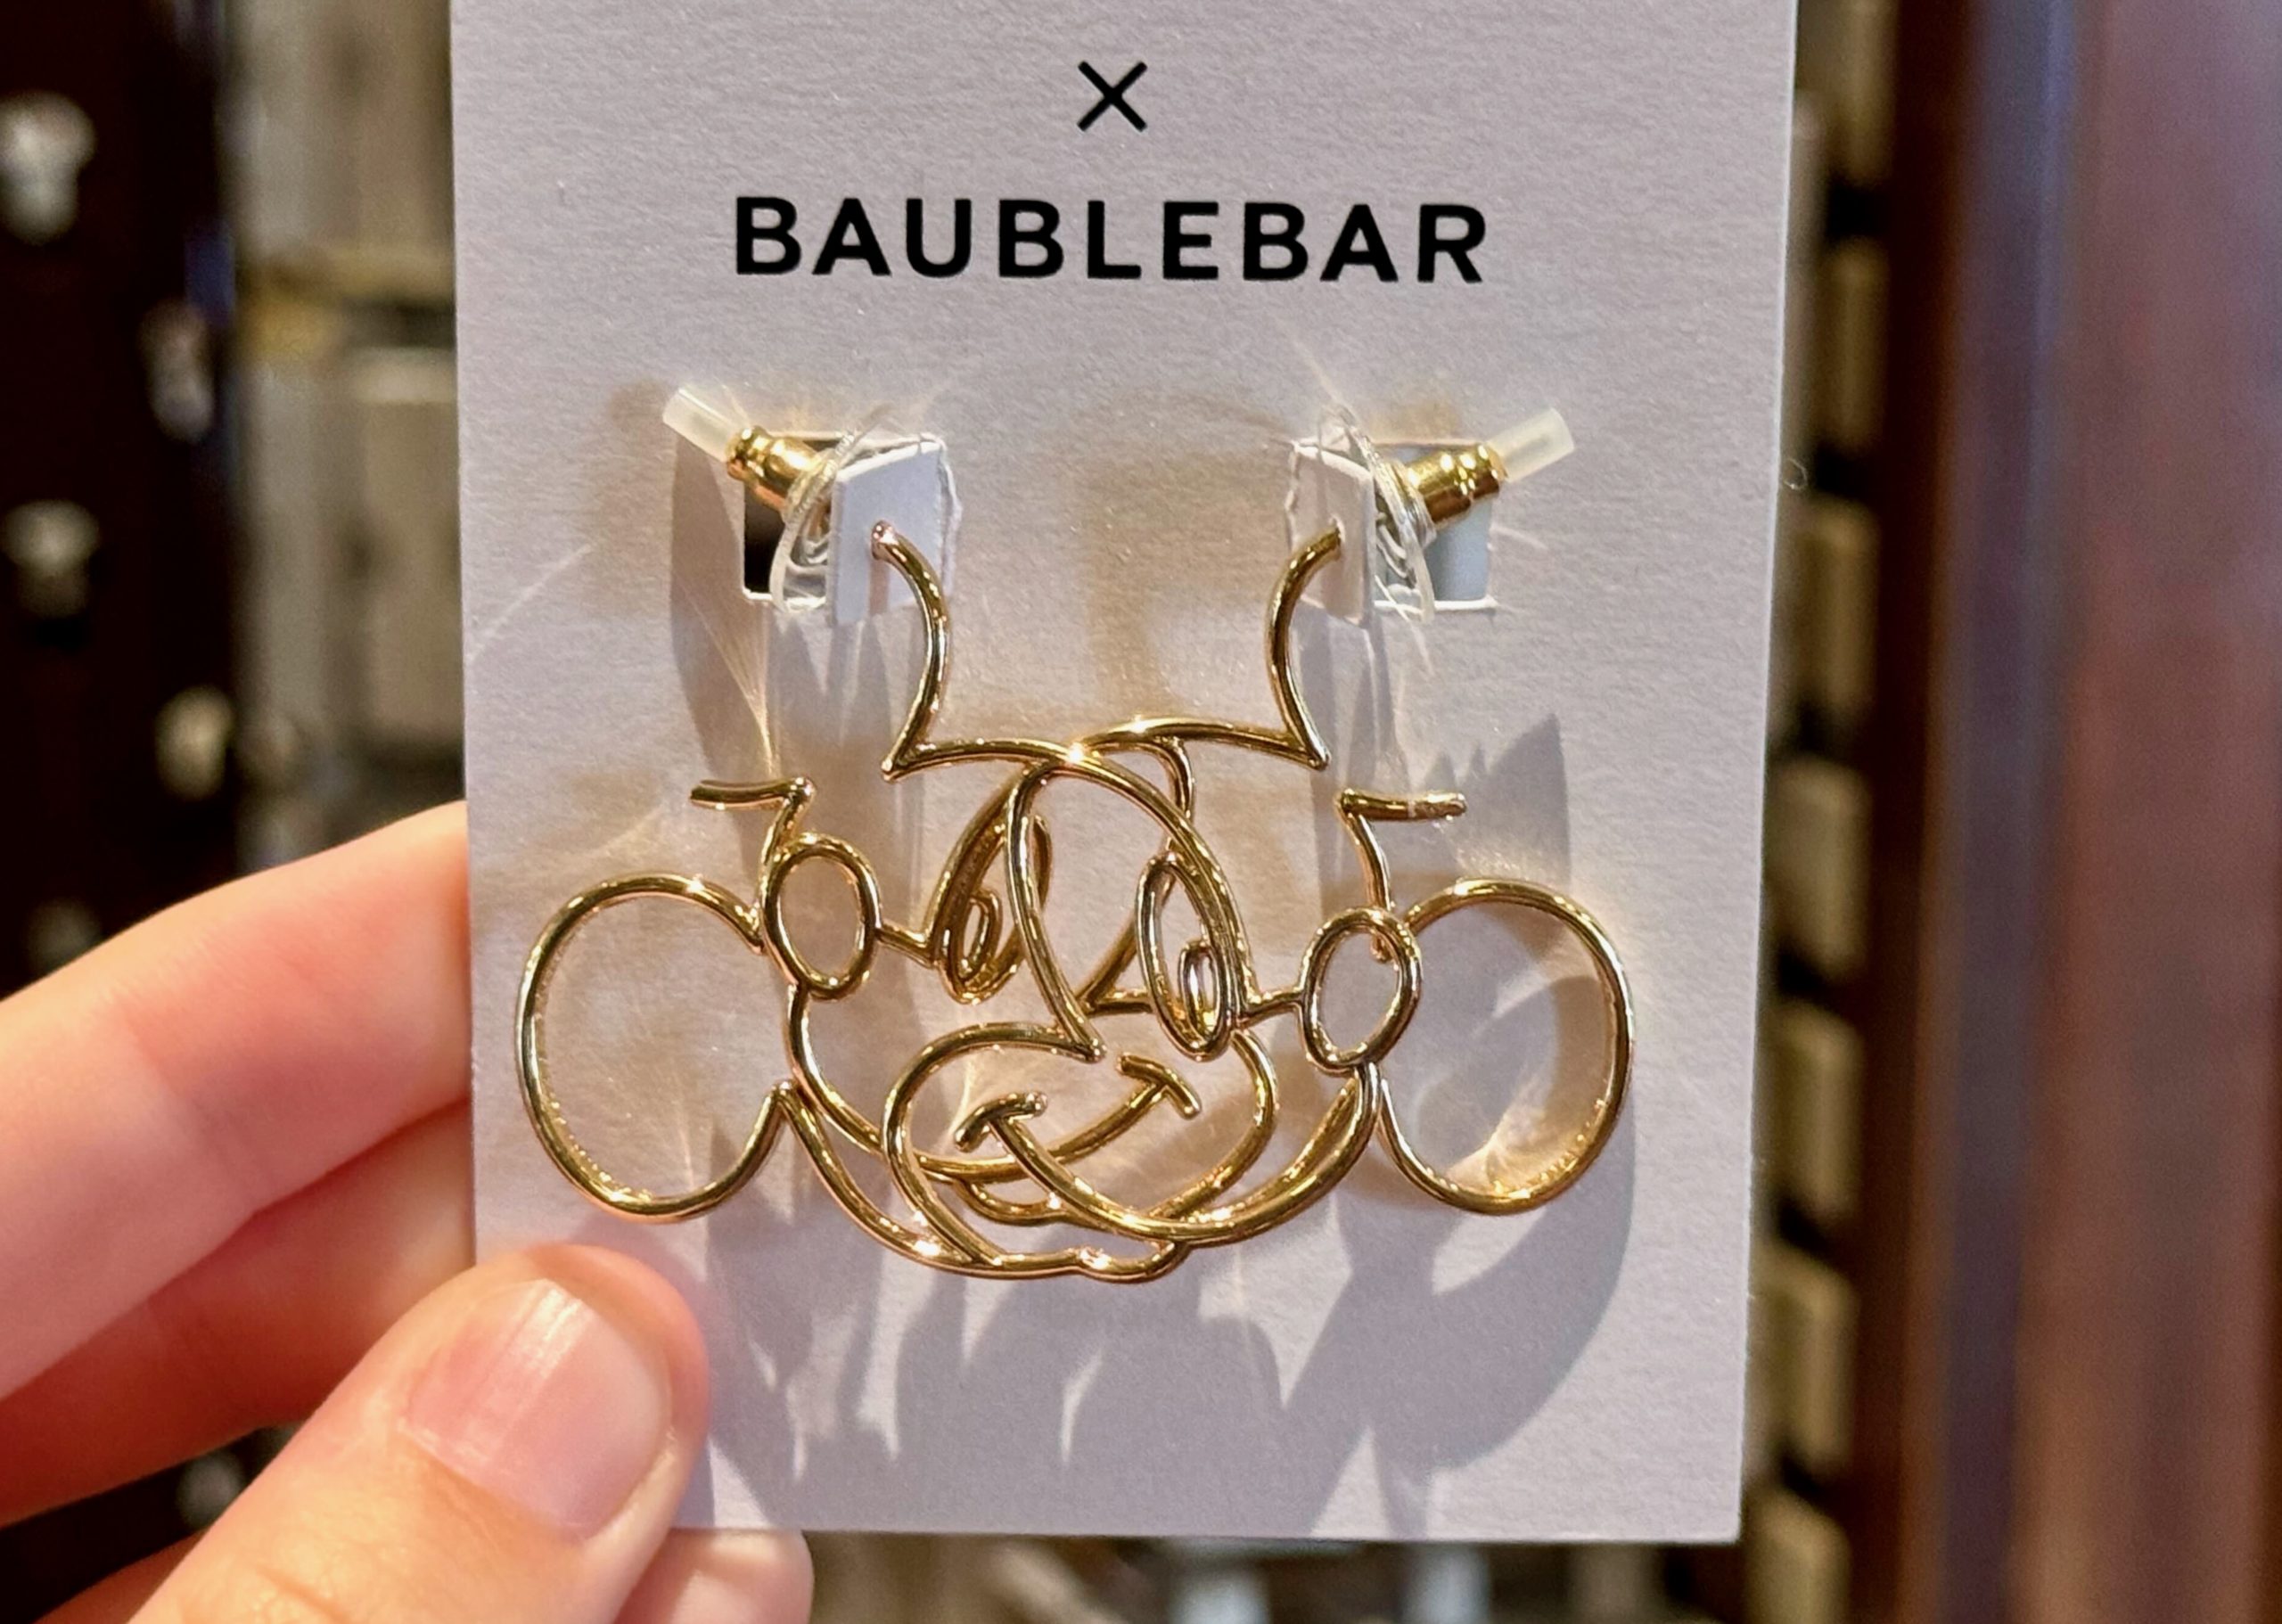 NEW BaubleBar Earrings Showcase Classic Disney Style in Magic Kingdom ...